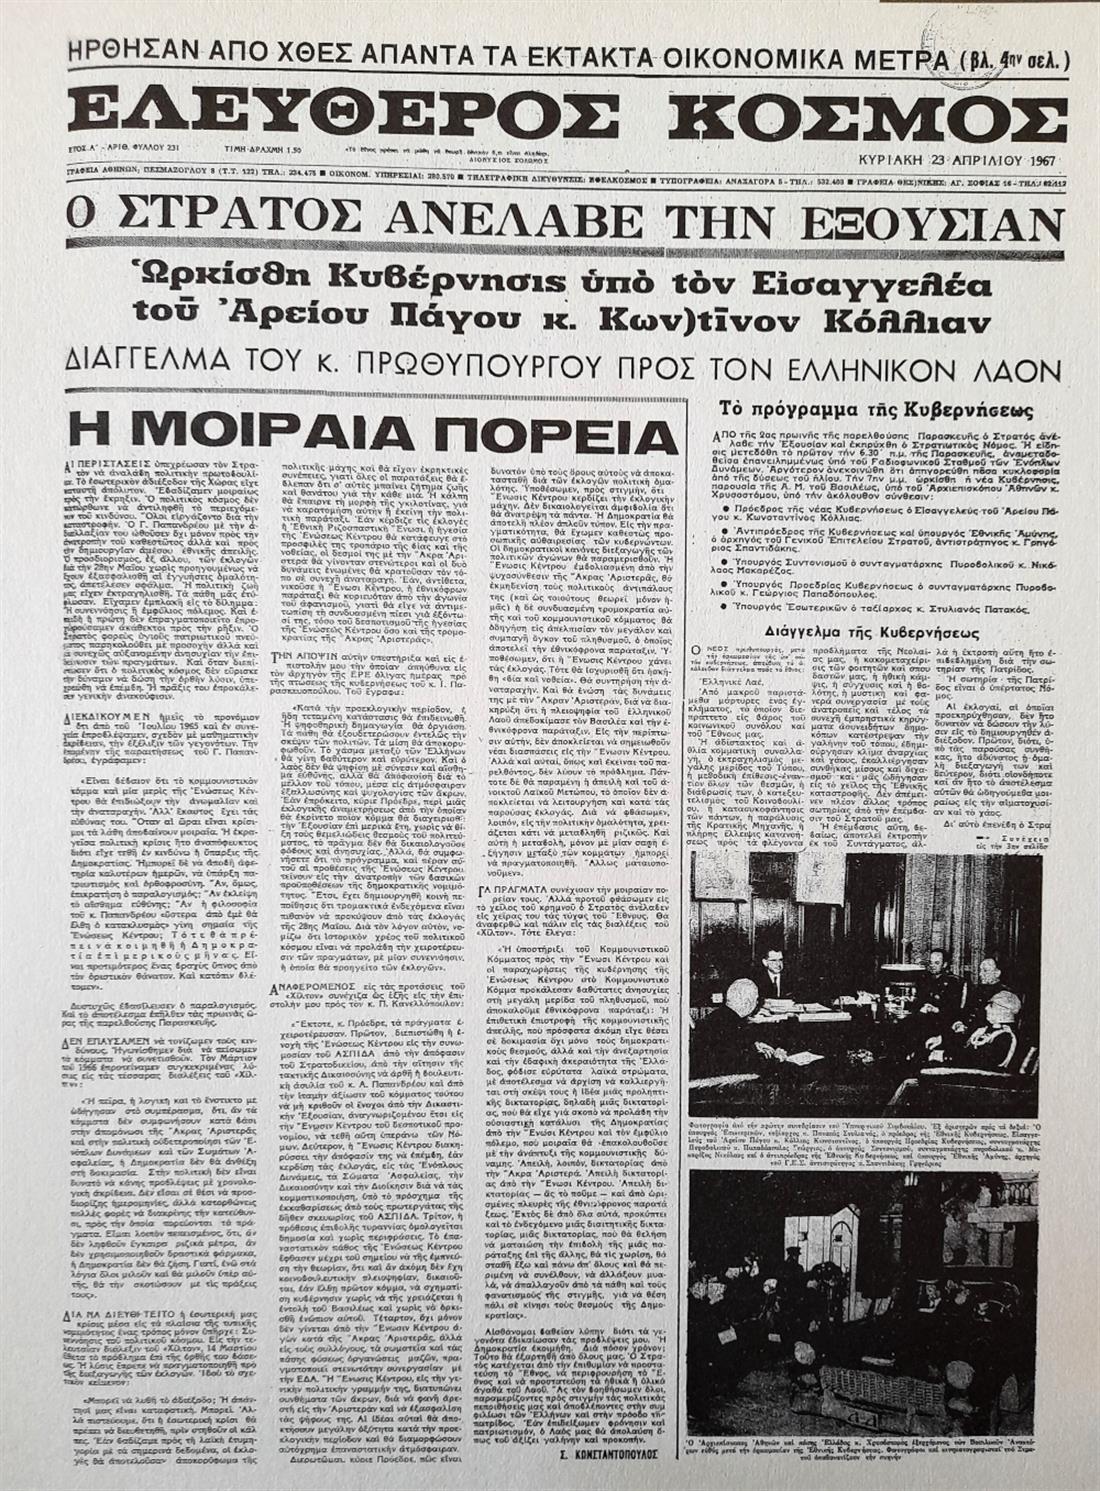 21 Απριλίου - Πραξικόπημα - Χούντα